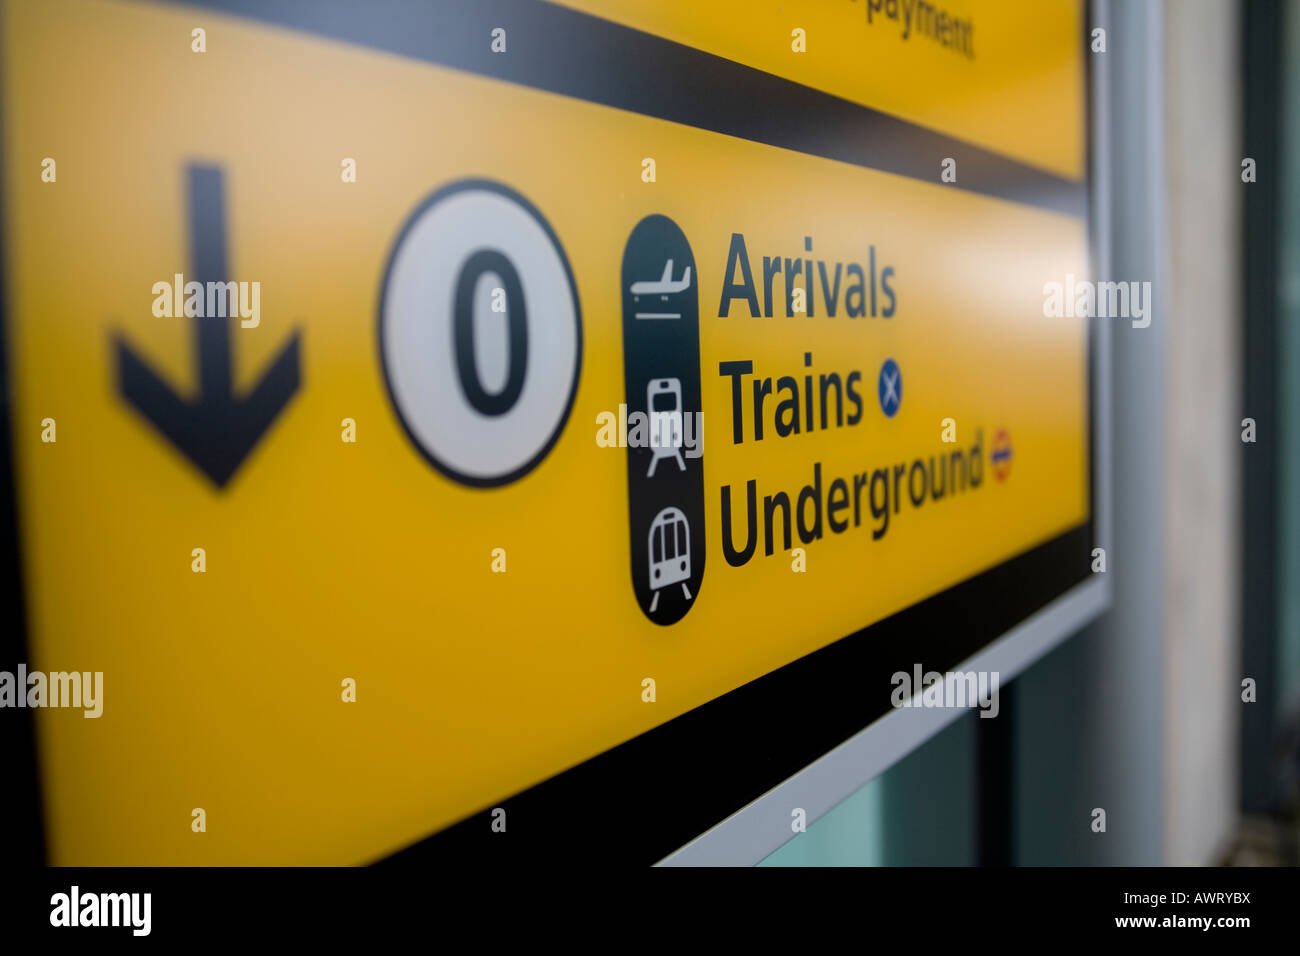 Eine Anreise, Züge und u-Bahn Schild am Flughafen London Heathrow terminal 5 Stockfoto